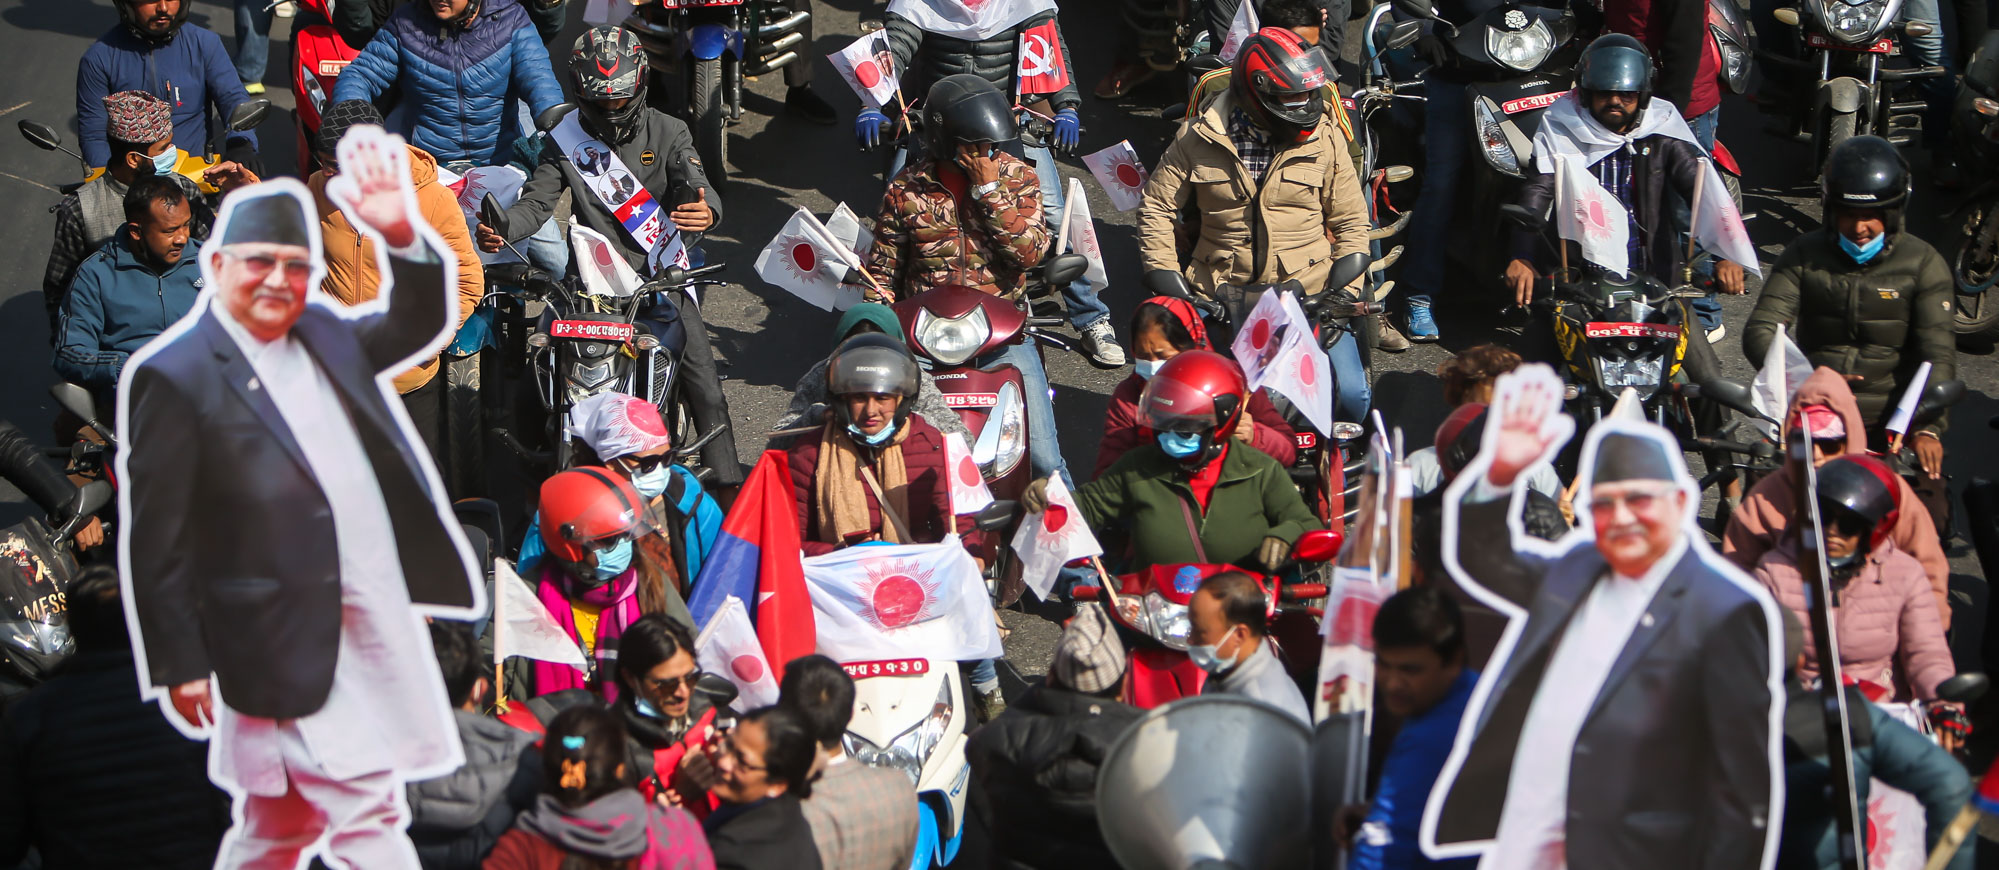 काठमाडौंमा ओलीपक्षीय युवा र विद्यार्थीको मोटरसाइकल र्‍याली